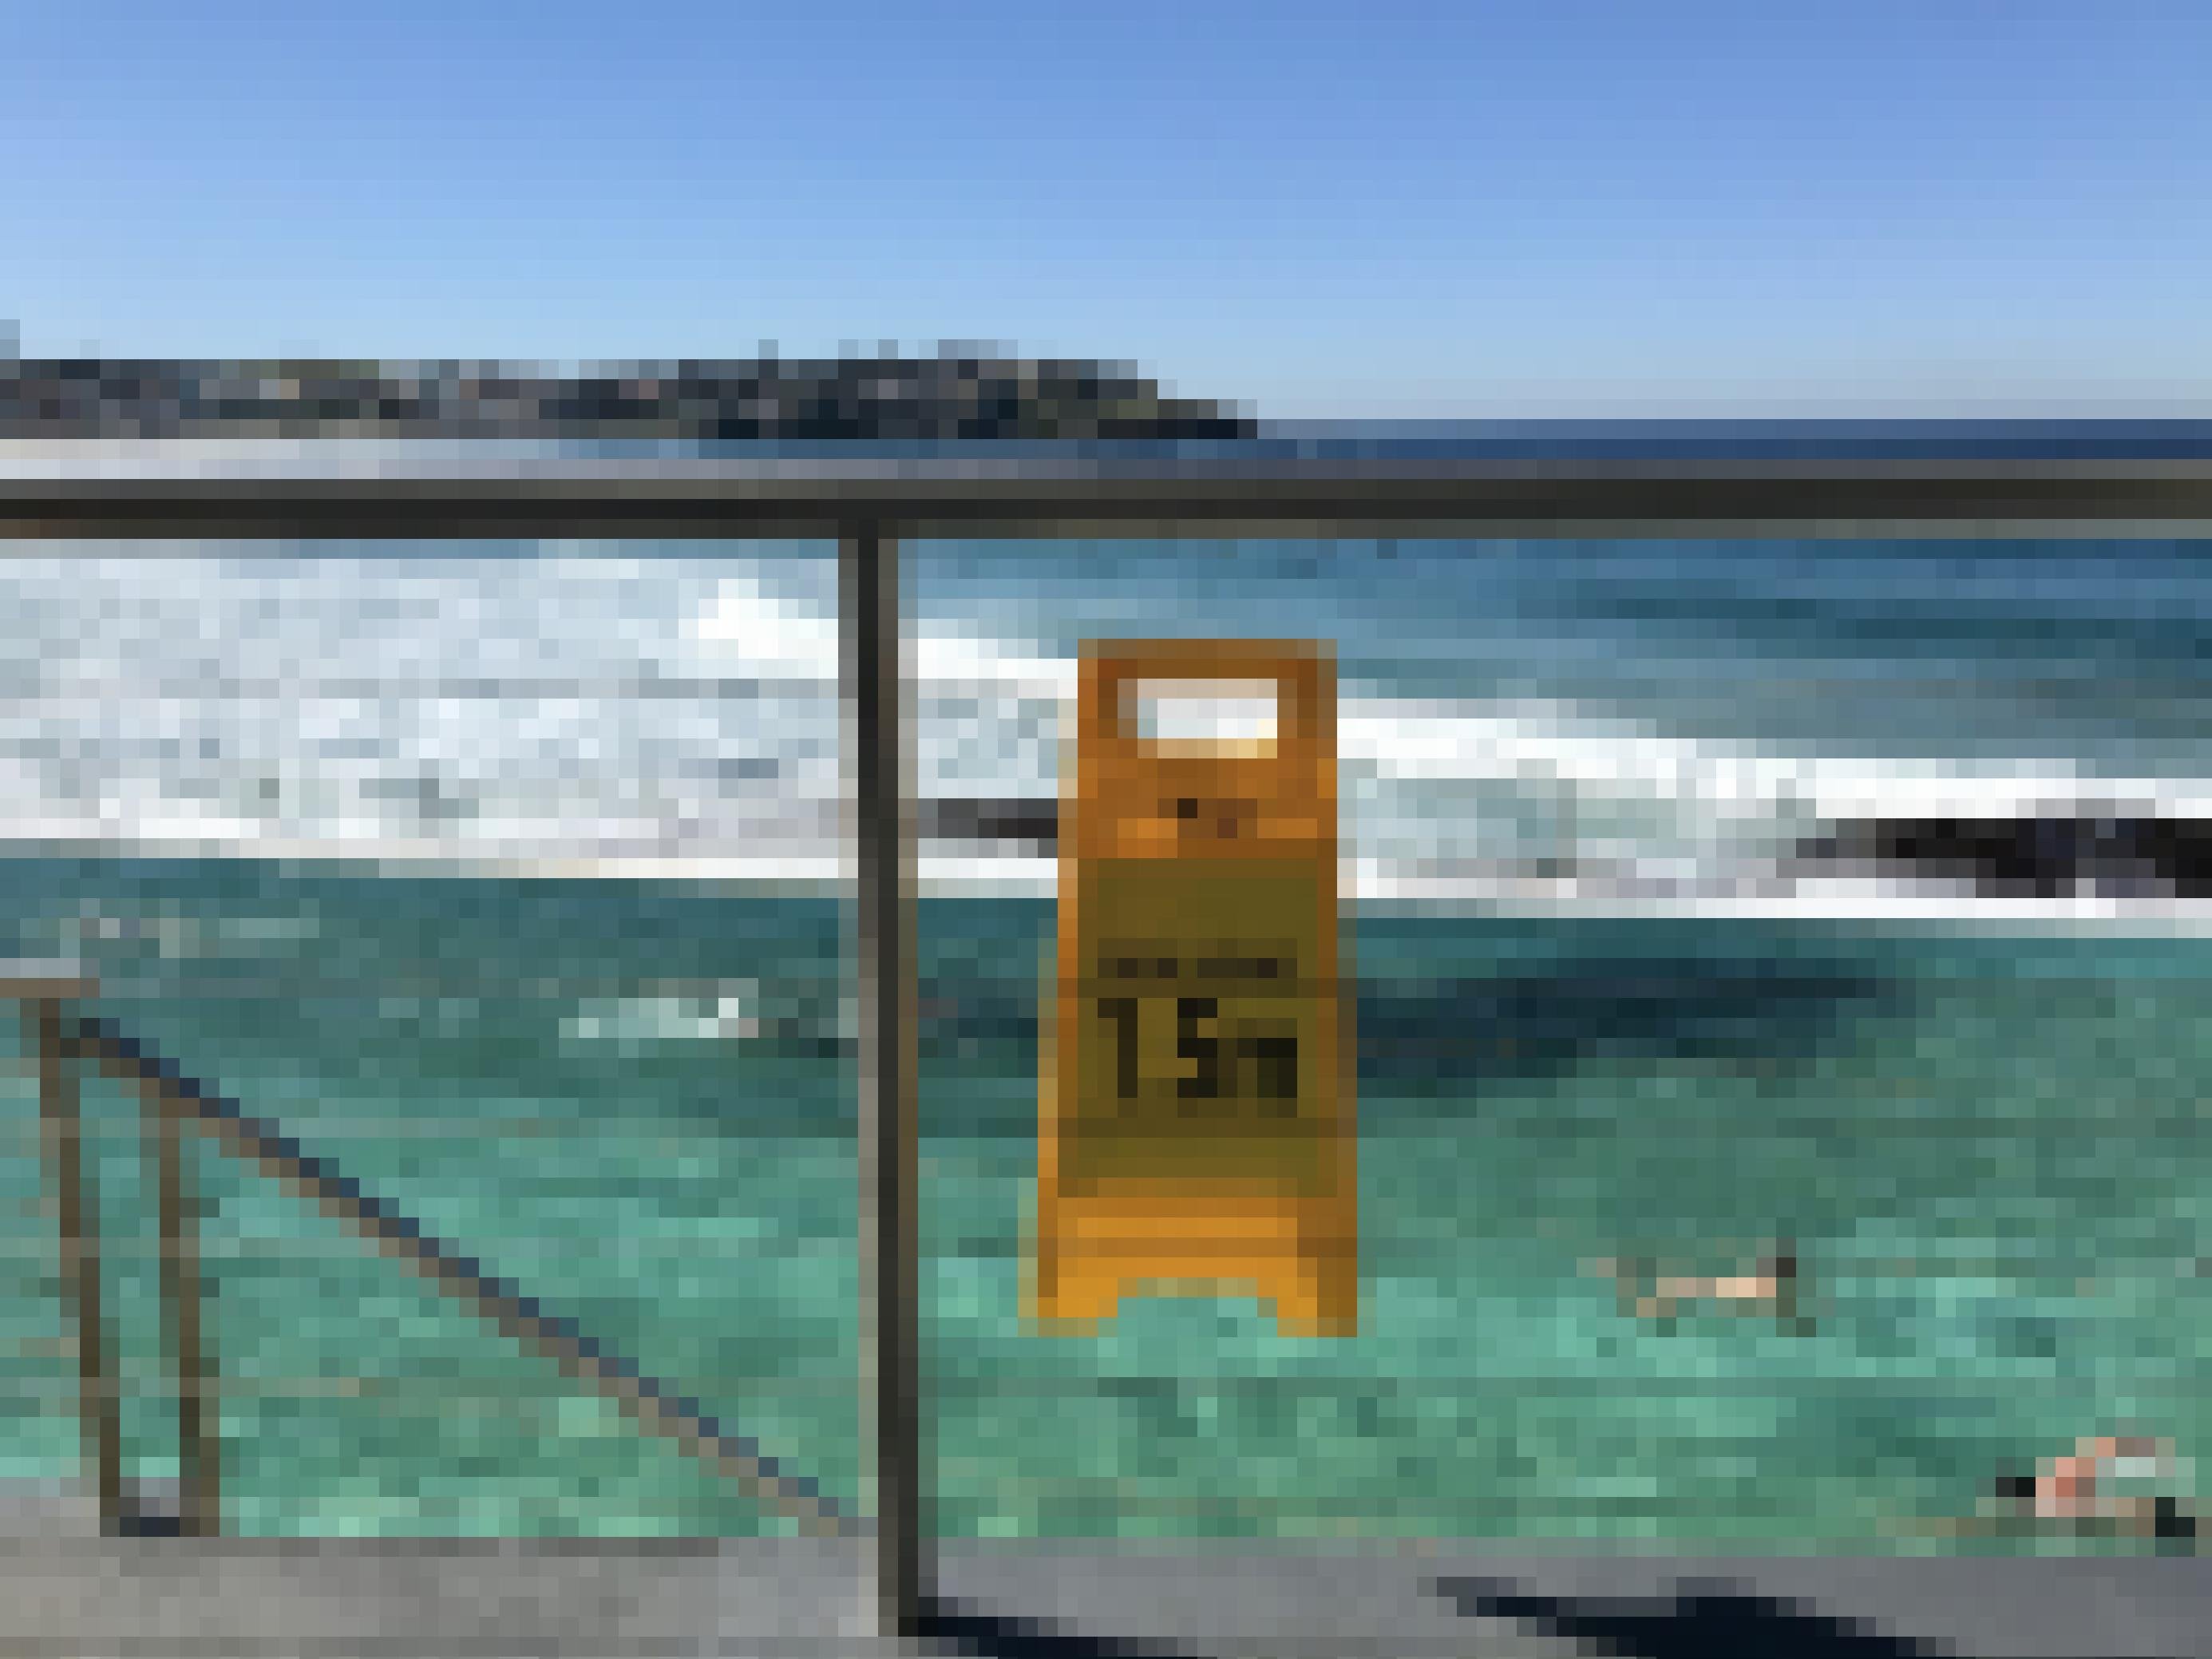 Im Meeresschwimmbad 'Icebergs’ in Sydneys Strandvorort Bondi Beach ziehen Krauler ihre Bahnen. Ein Schild erinnert daran, 1,5 Meter Abstand zu anderen Menschen zu halten. In der letzten Juniwoche geht auch das Meeresschwimmbad wieder in den Lockdown.